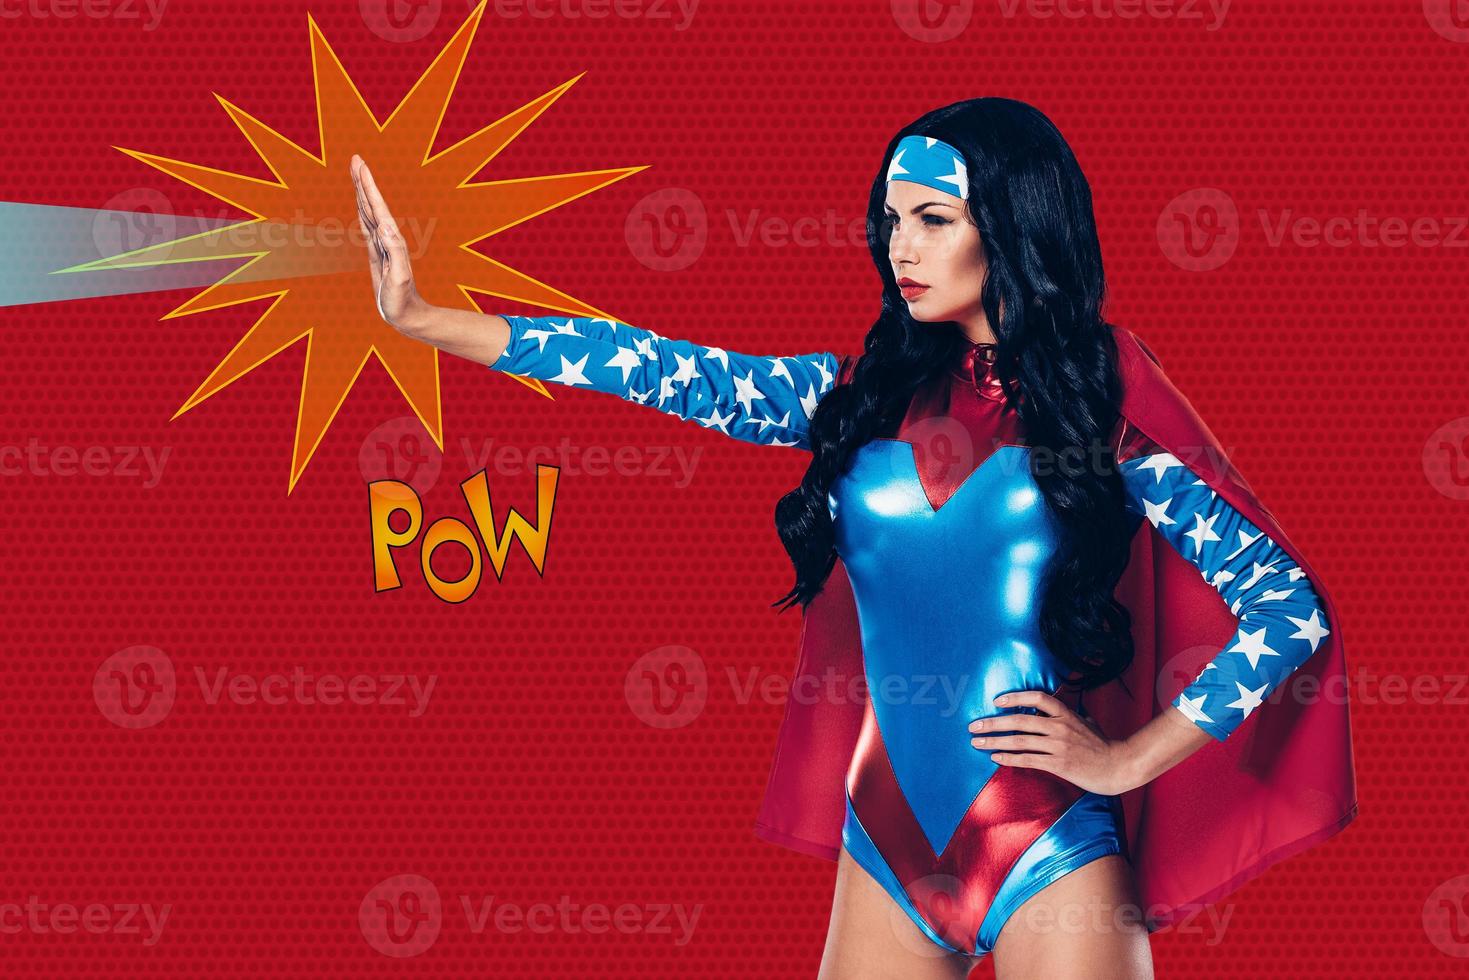 ella puede detener cualquier crimen. vista lateral de una hermosa joven vestida de superhéroe disparando un rayo de su mano mientras se enfrenta a un fondo rojo foto